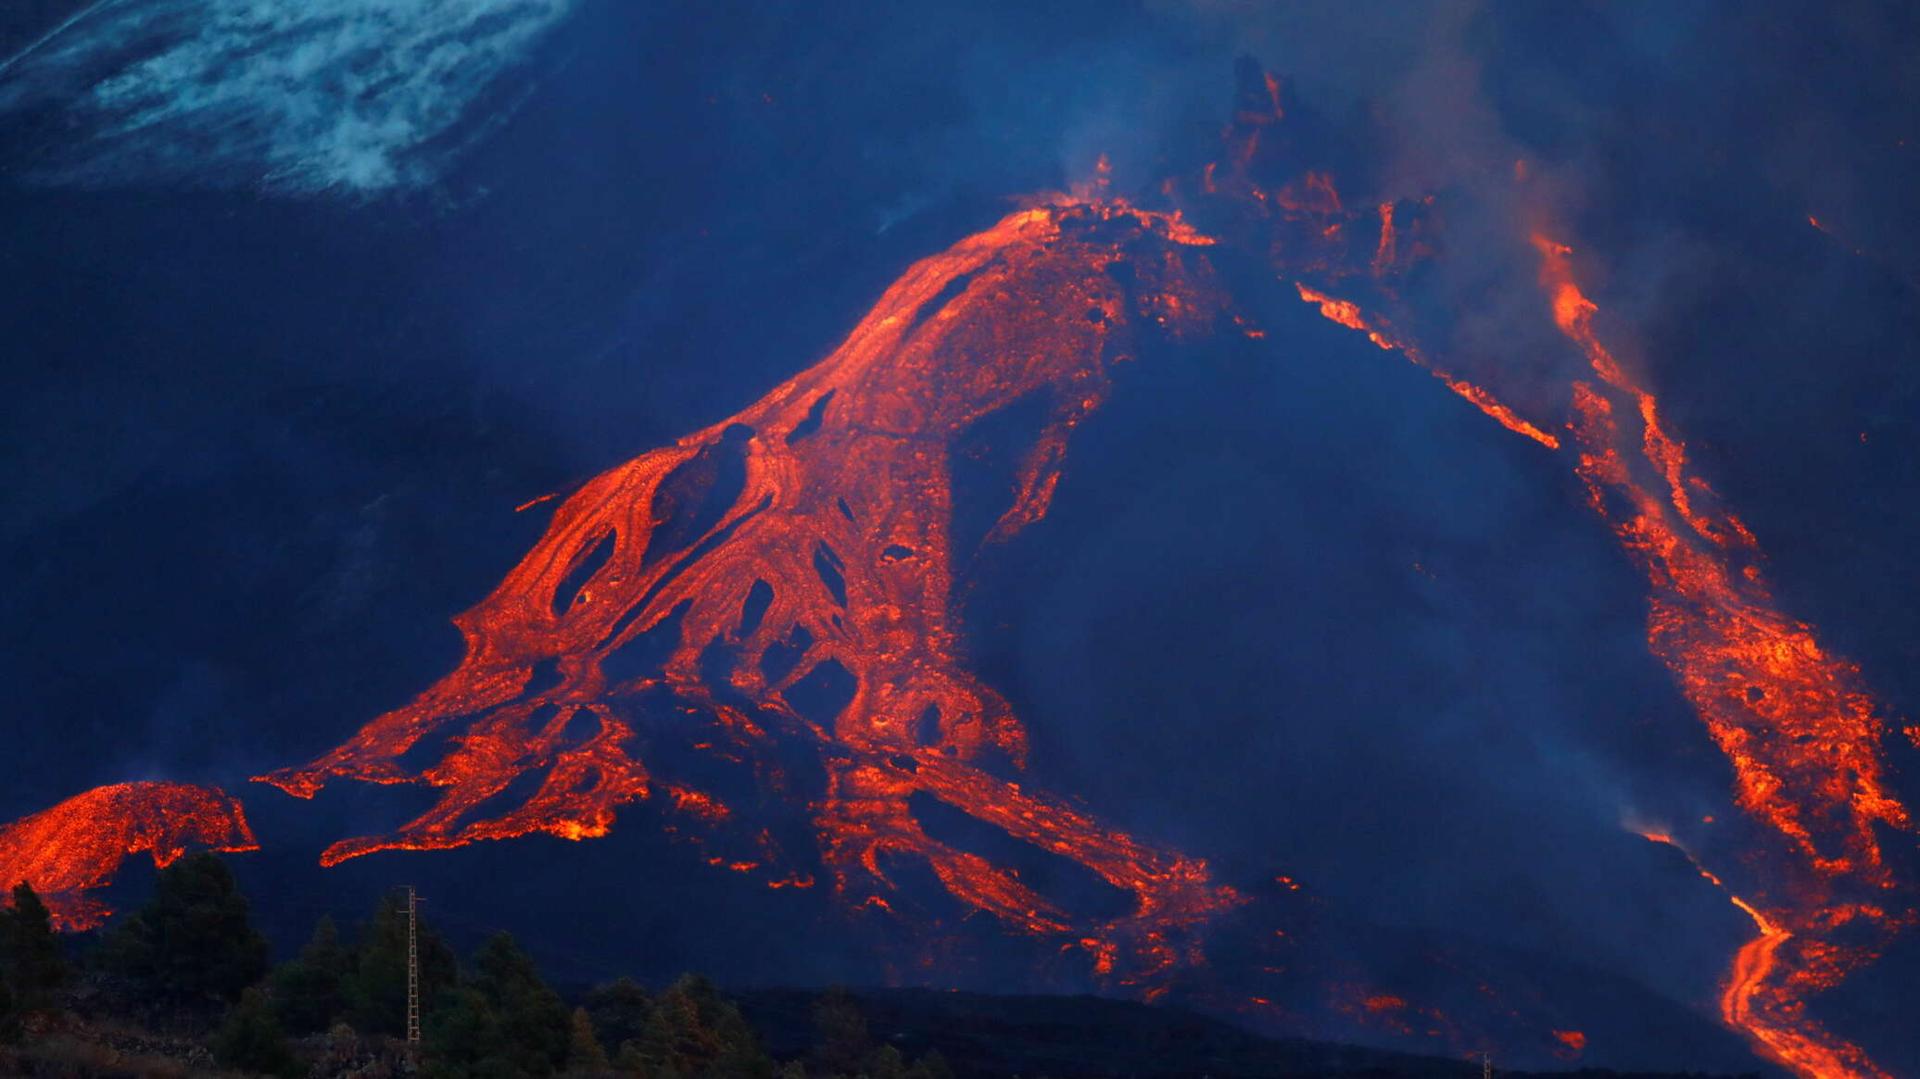 لأول مرة في التاريخ رجل يحلق فوق بركان نشط ببدلة بأجنحة... فيديو